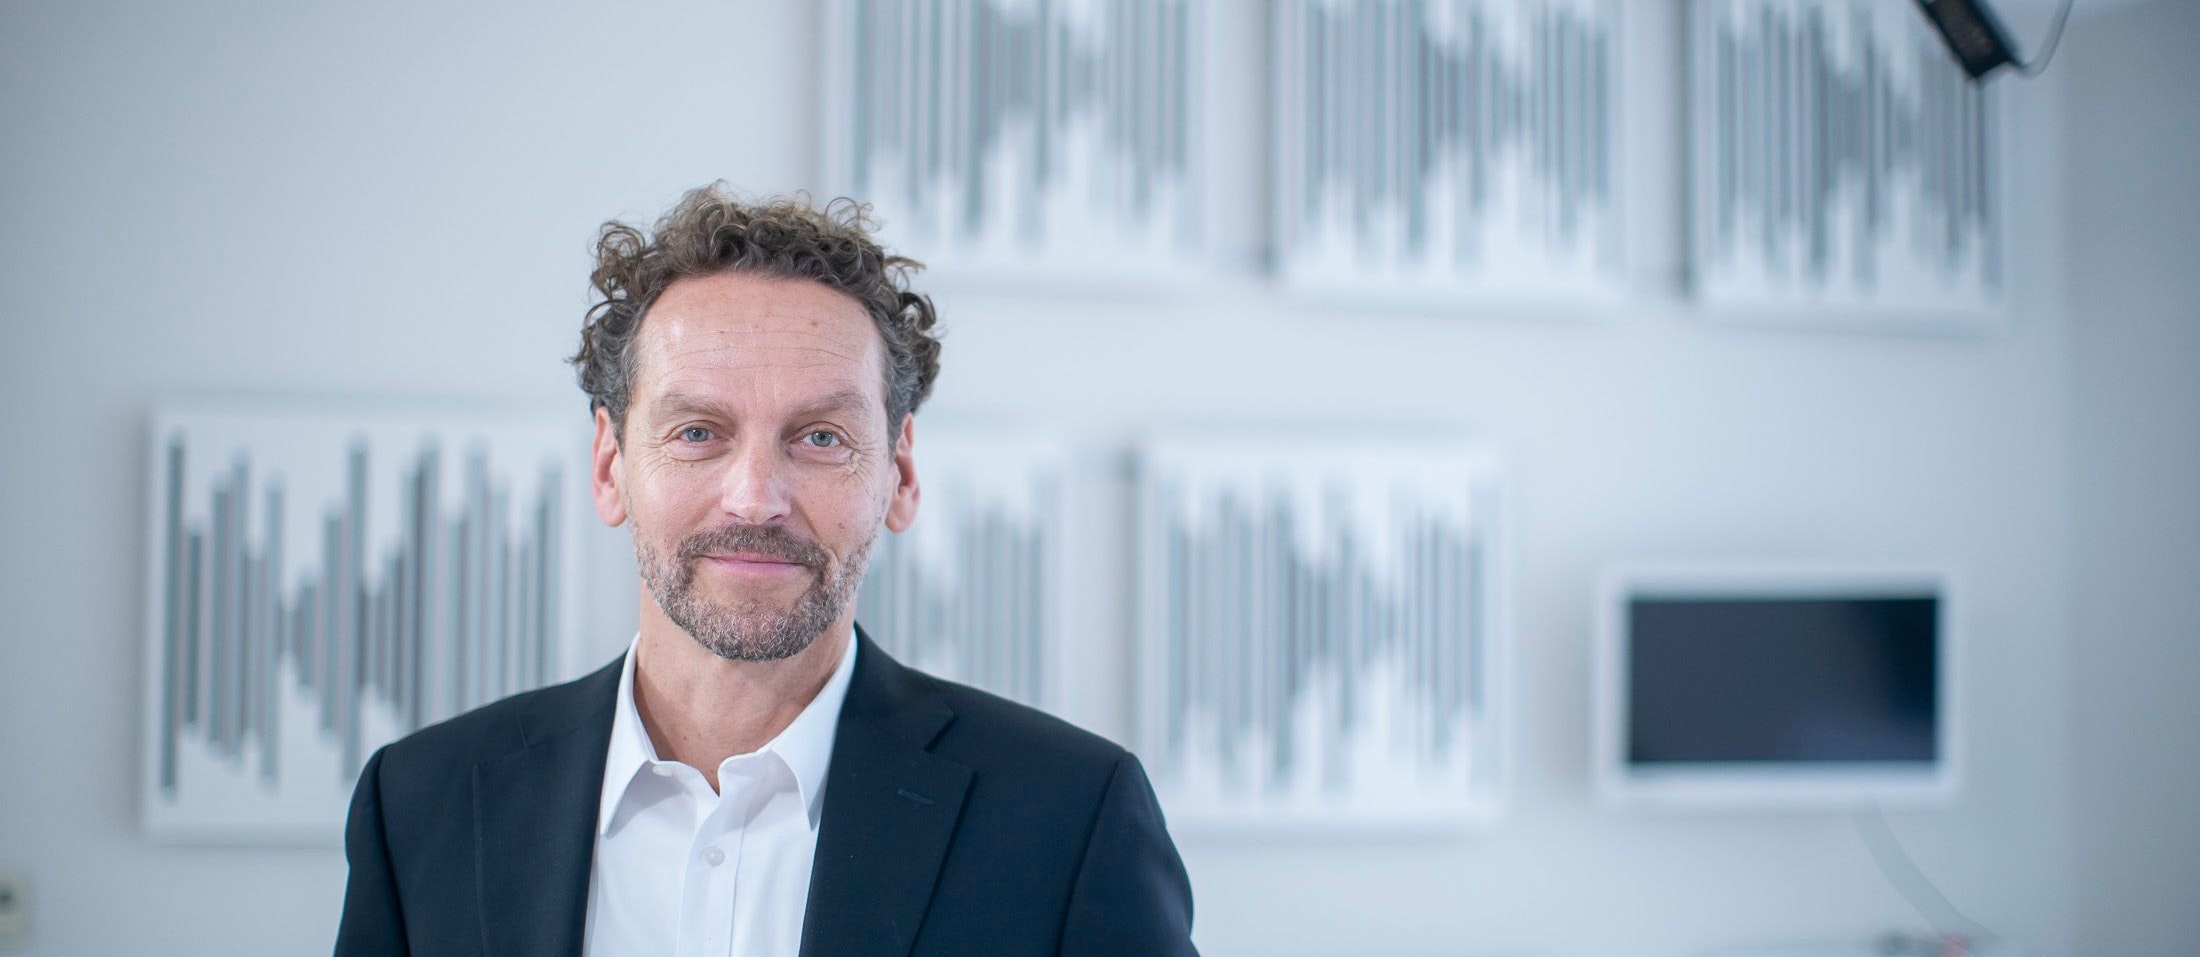 Der Molekularbiologe Martin Hetzer ist seit 1. Jänner 2023 Präsident  des Institute of Science and Technology Austria (ISTA) in Klosterneuburg